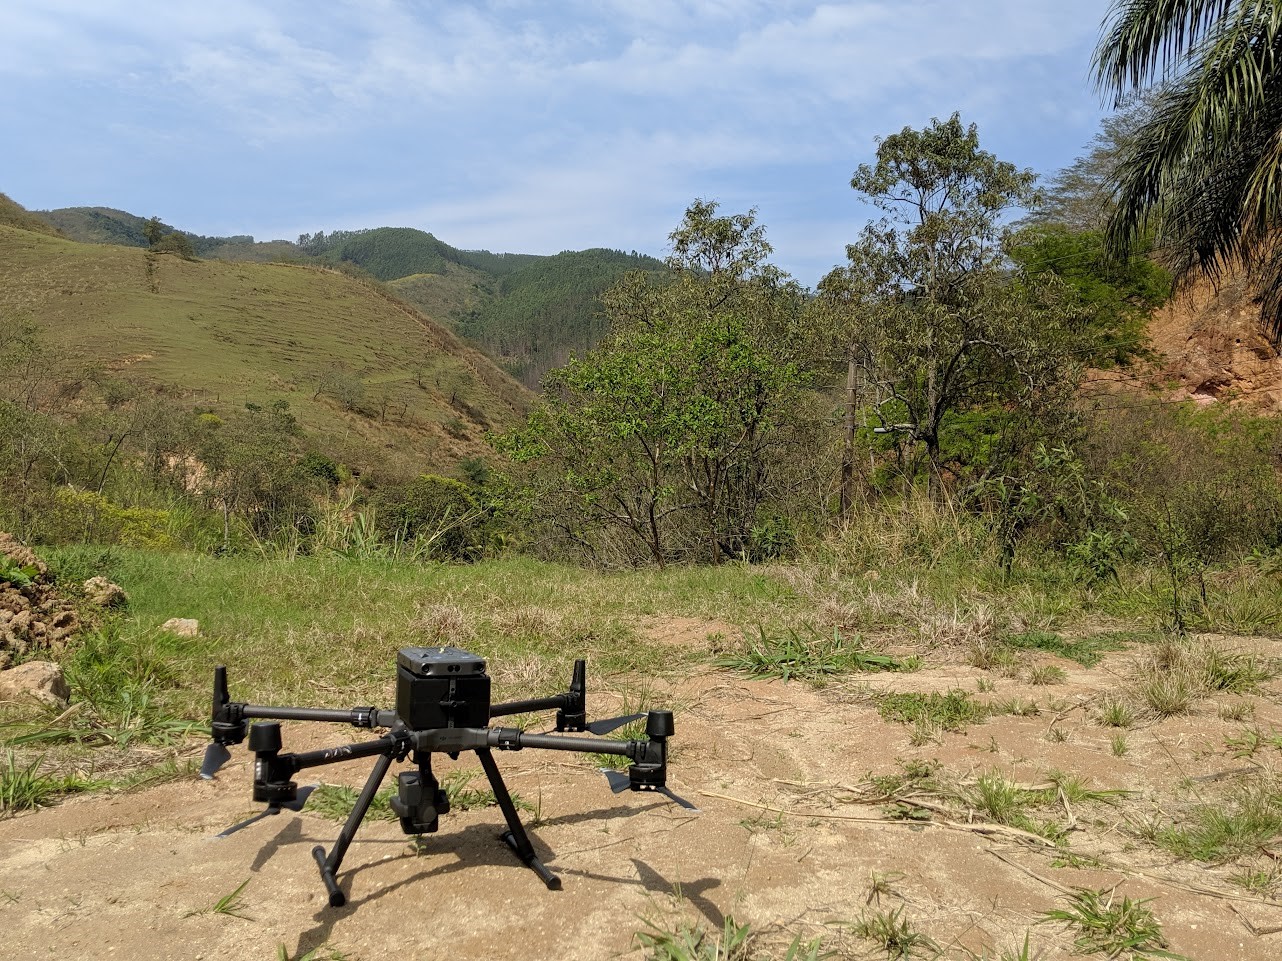 dji-matrice-300-drone.jpg